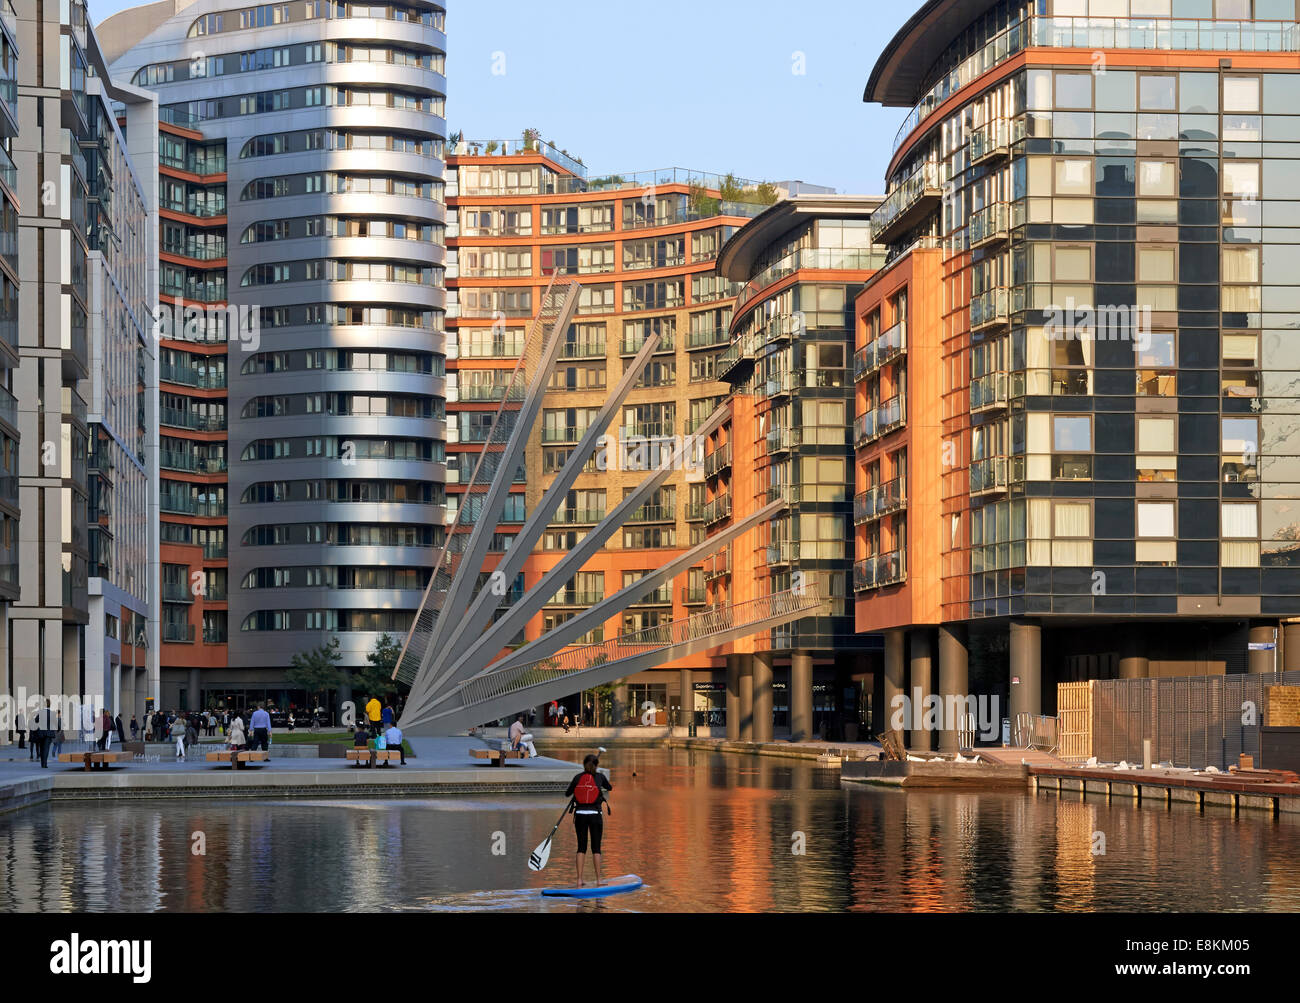 Passerelle Merchant Square, Londres, Royaume-Uni. Architecte : Knight Architects Limited, 2014. Vue lointaine avec pont en elev Banque D'Images